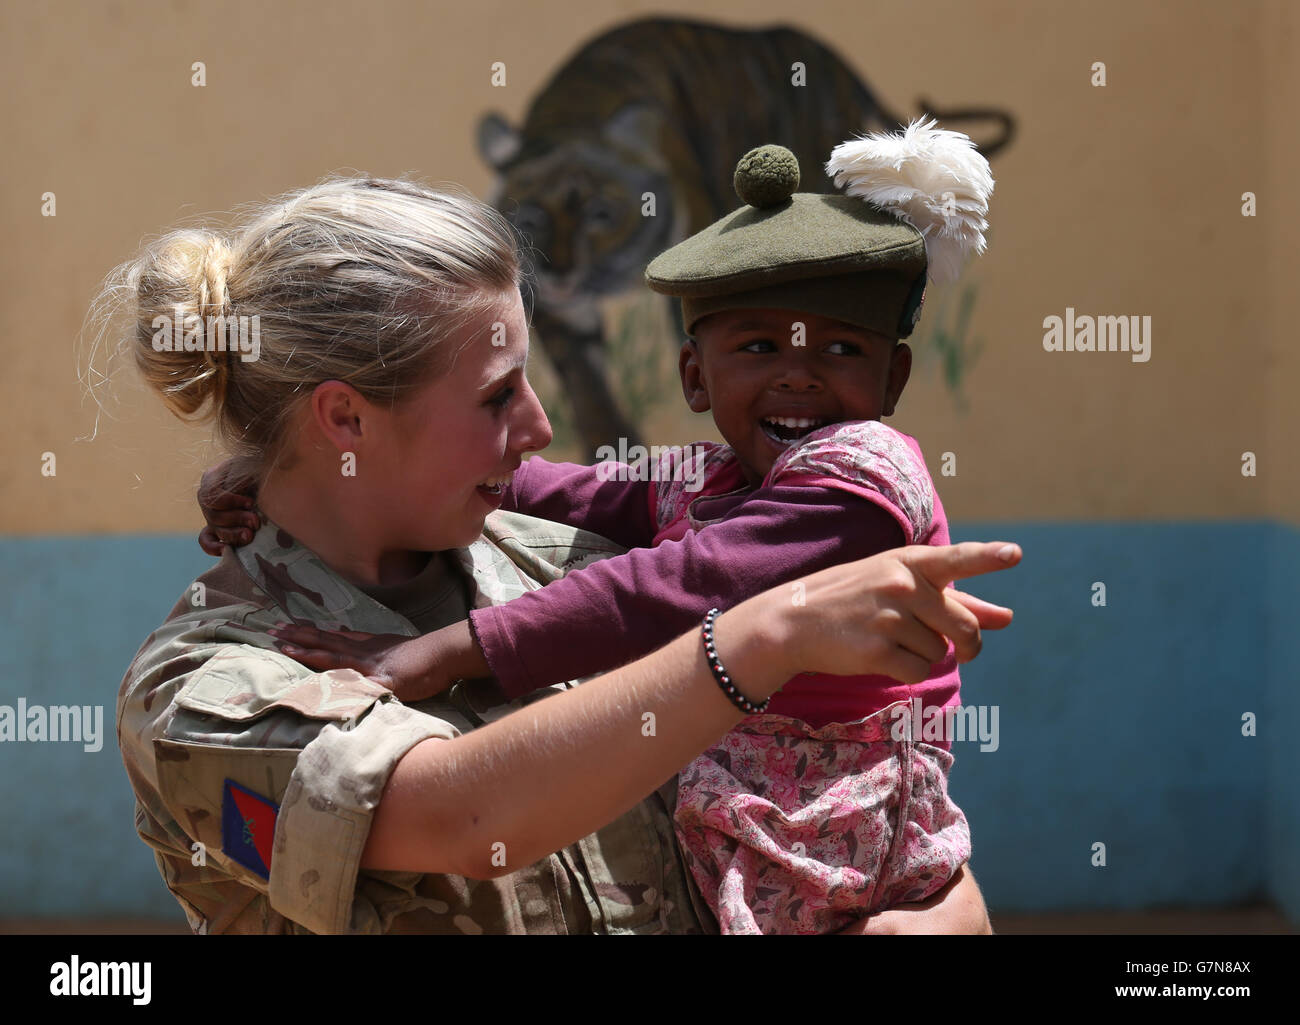 Private Jess Robshaw aus 2 Schotten, spielt mit einem Waisenkind, das ihr Tam O'Shanter trägt, während eines Besuchs im Nanyuki Kinderheim, um den Waisenkindern Geschenke als Soldaten des 2. Bataillons, des Royal Regiment of Scotland, zu spenden. Nehmen Sie an der Übung Askari Storm am Stadtrand von Nanyuki, Kenia, Teil. Stockfoto